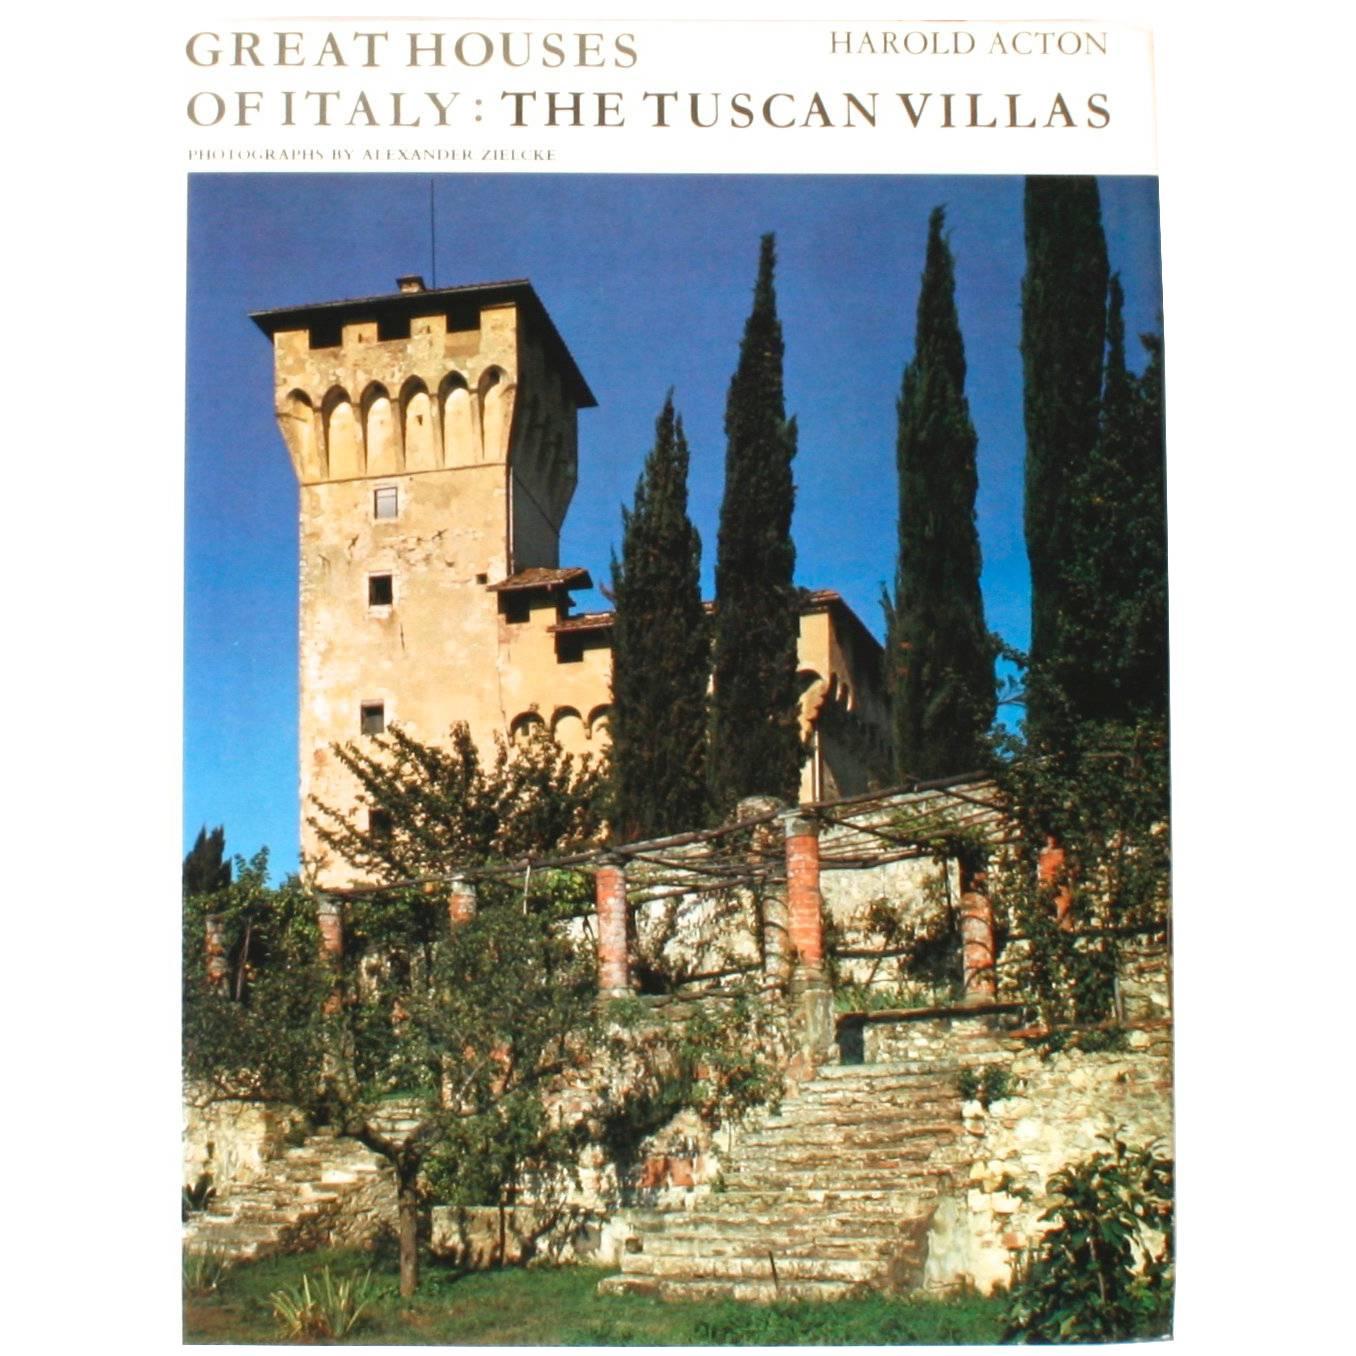 « The Tuscan Villas » (Les grandes maisons d'Italie) de Harold Acton, première édition